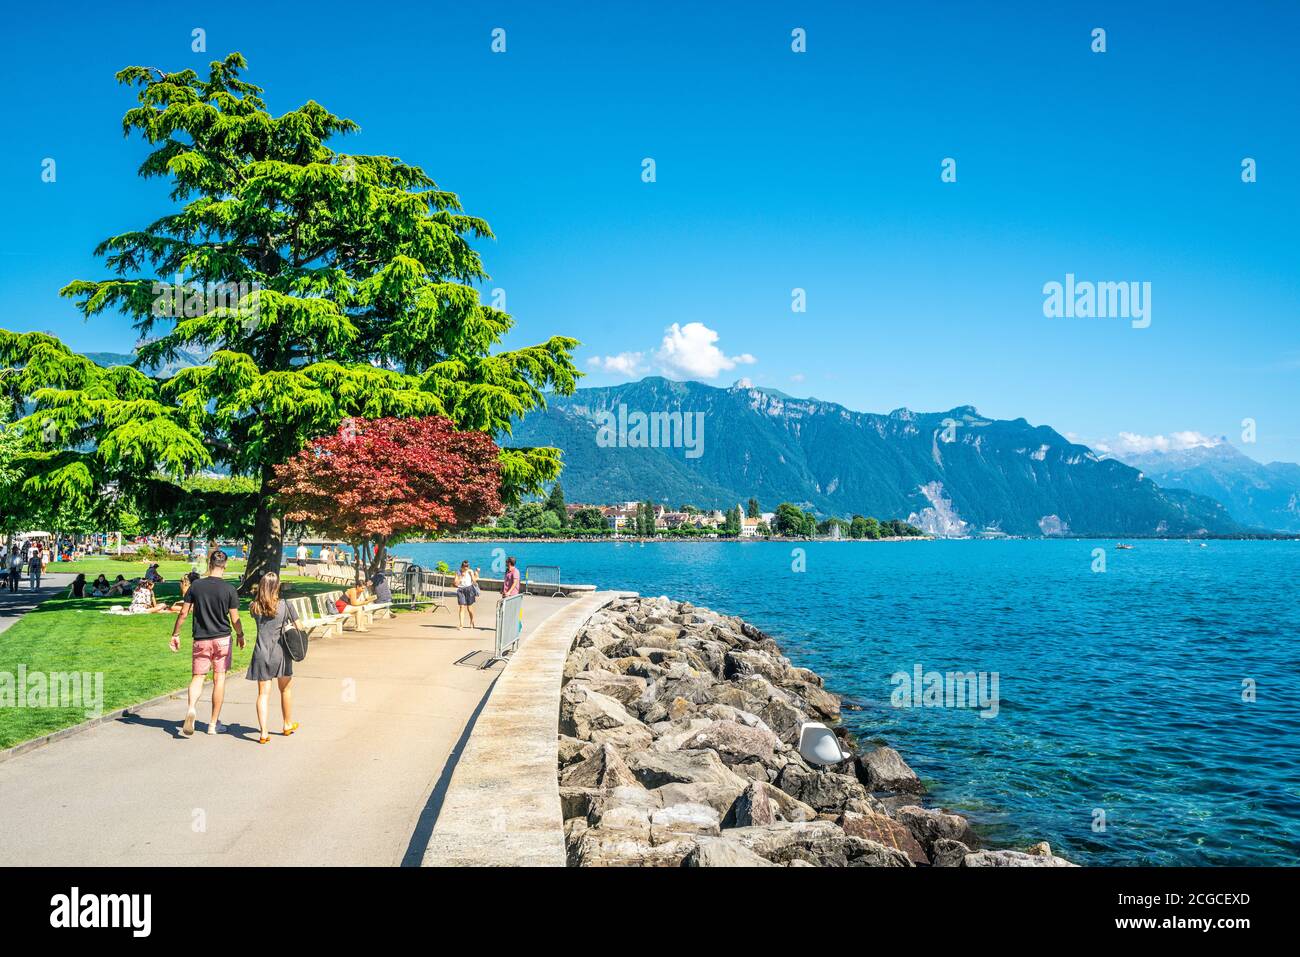 Vevey Suisse , 4 juillet 2020 : personnes marchant sur Vevey, promenade du quai piétonnier le long du lac Léman, le jour d'été ensoleillé à Vaud Suisse Banque D'Images